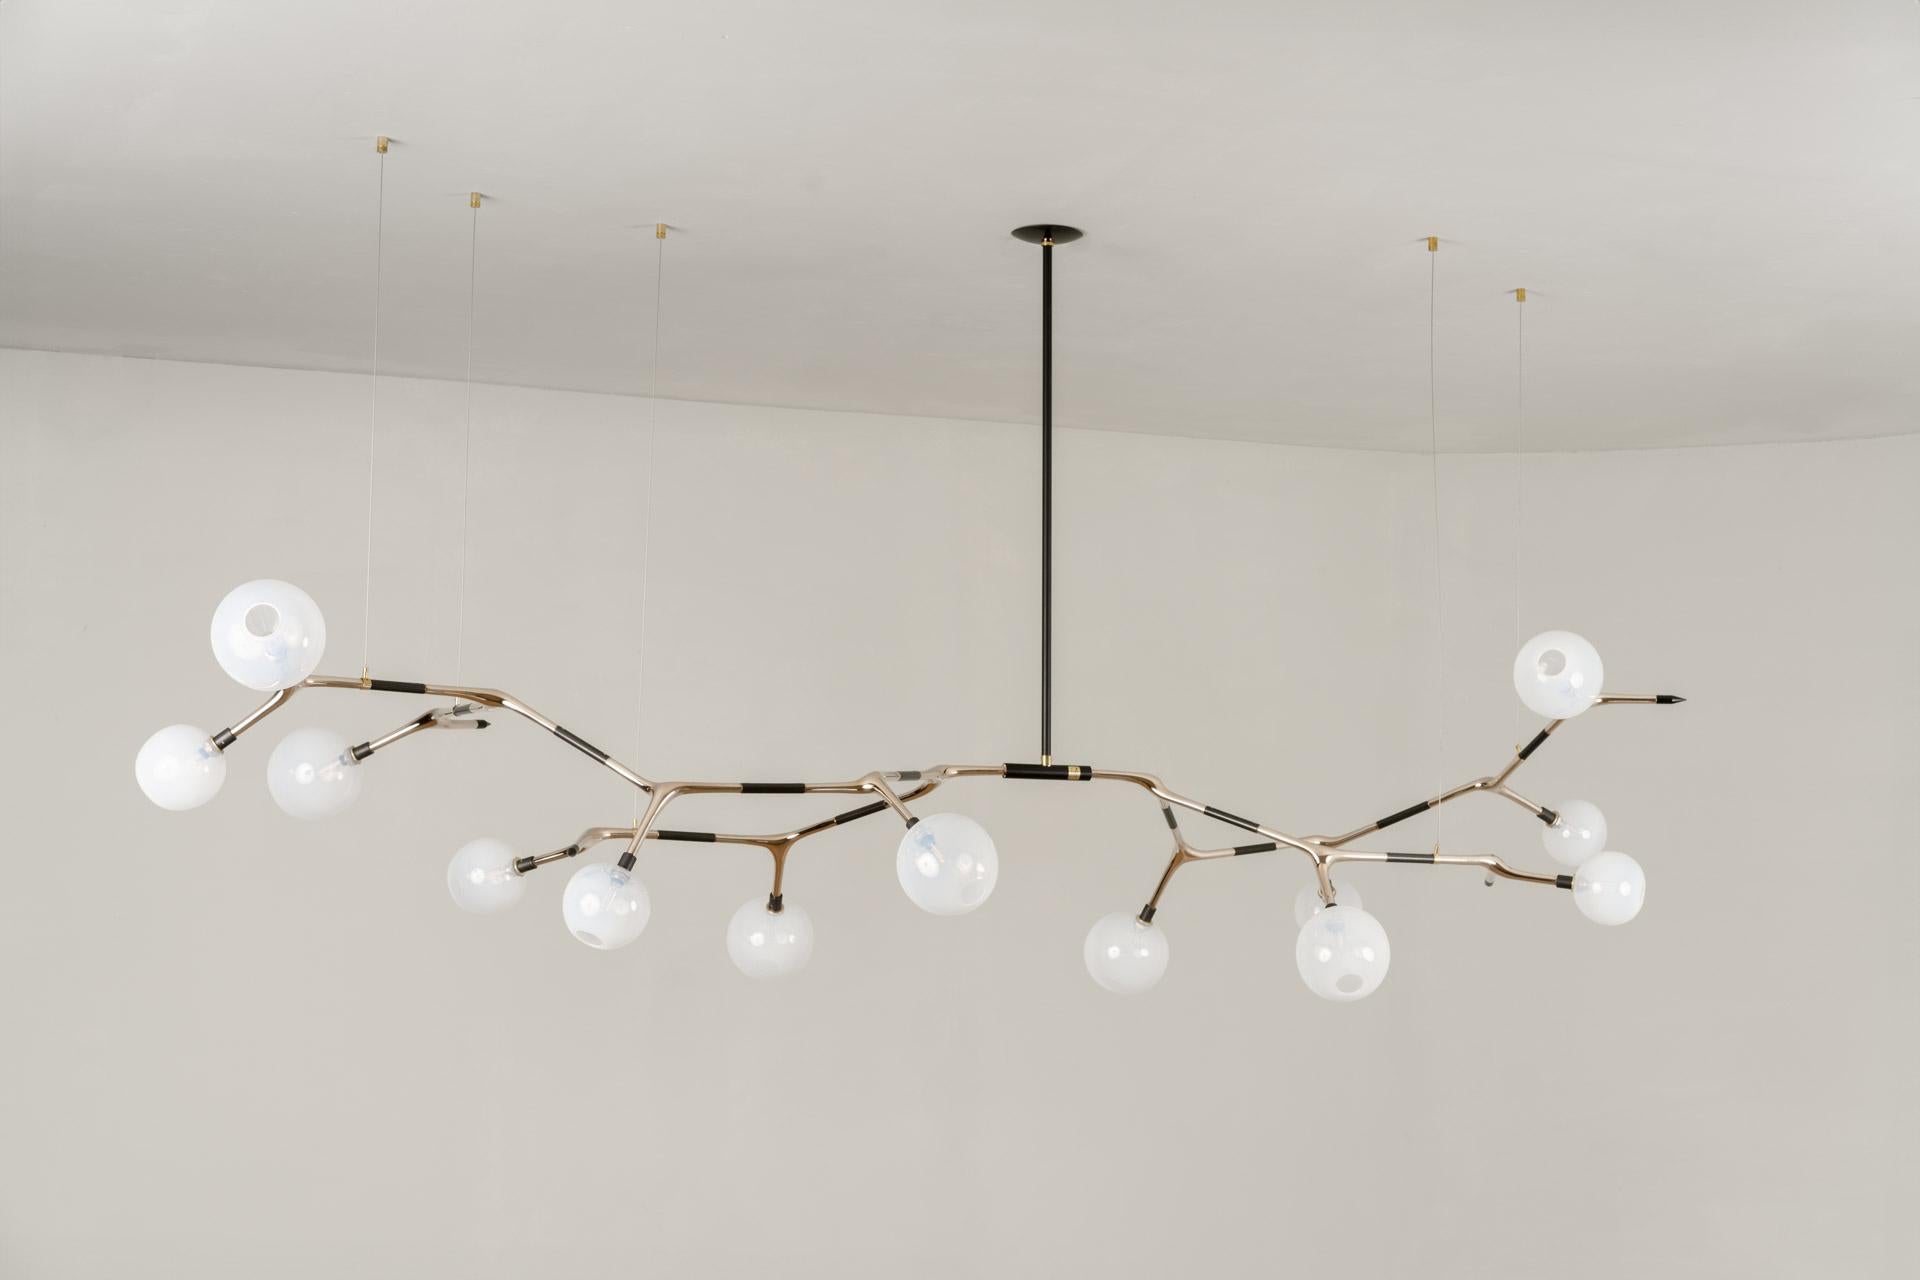 La lampe suspendue MANTIS 13 a été conçue pour la Collection S/One par l'artiste mexicaine Isabel Moncada.

Tout comme l'insecte dont elle partage le nom, cette pièce est allongée avec des lignes fluides et des courbes douces. Les globes imitent les